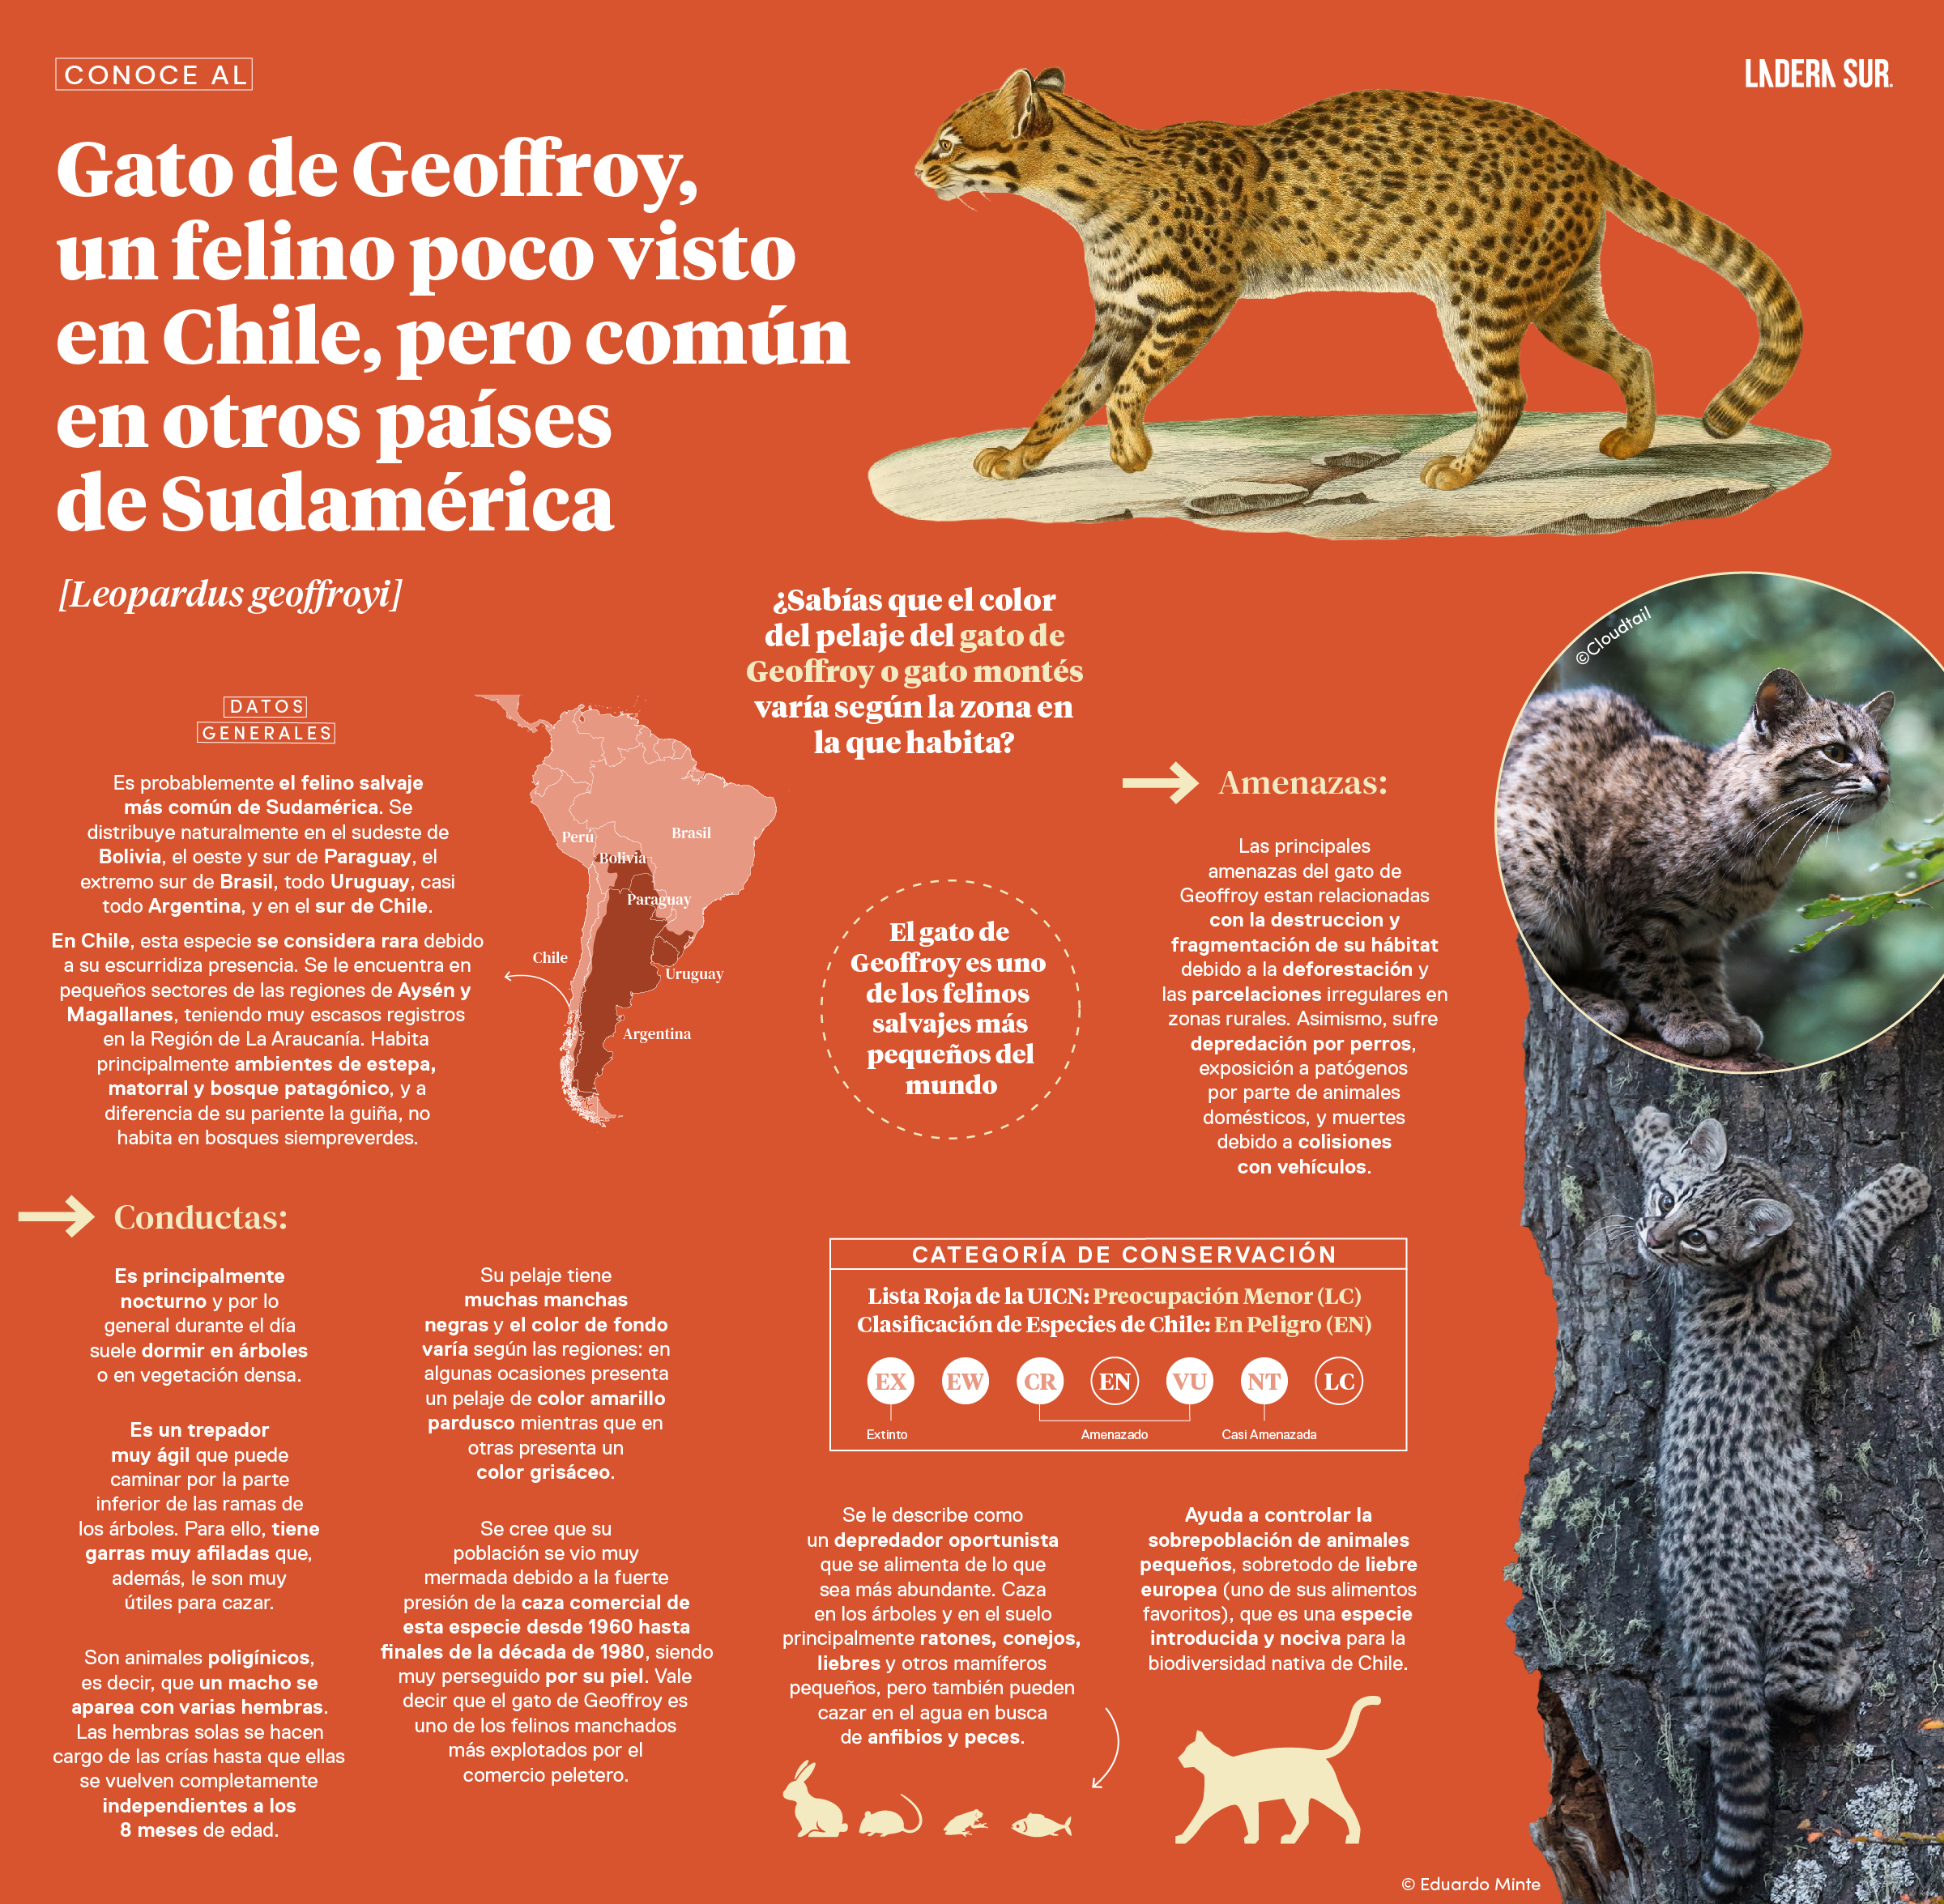 Gato de Geoffroy, un felino poco visto en Chile, pero común en otros países de Sudamérica